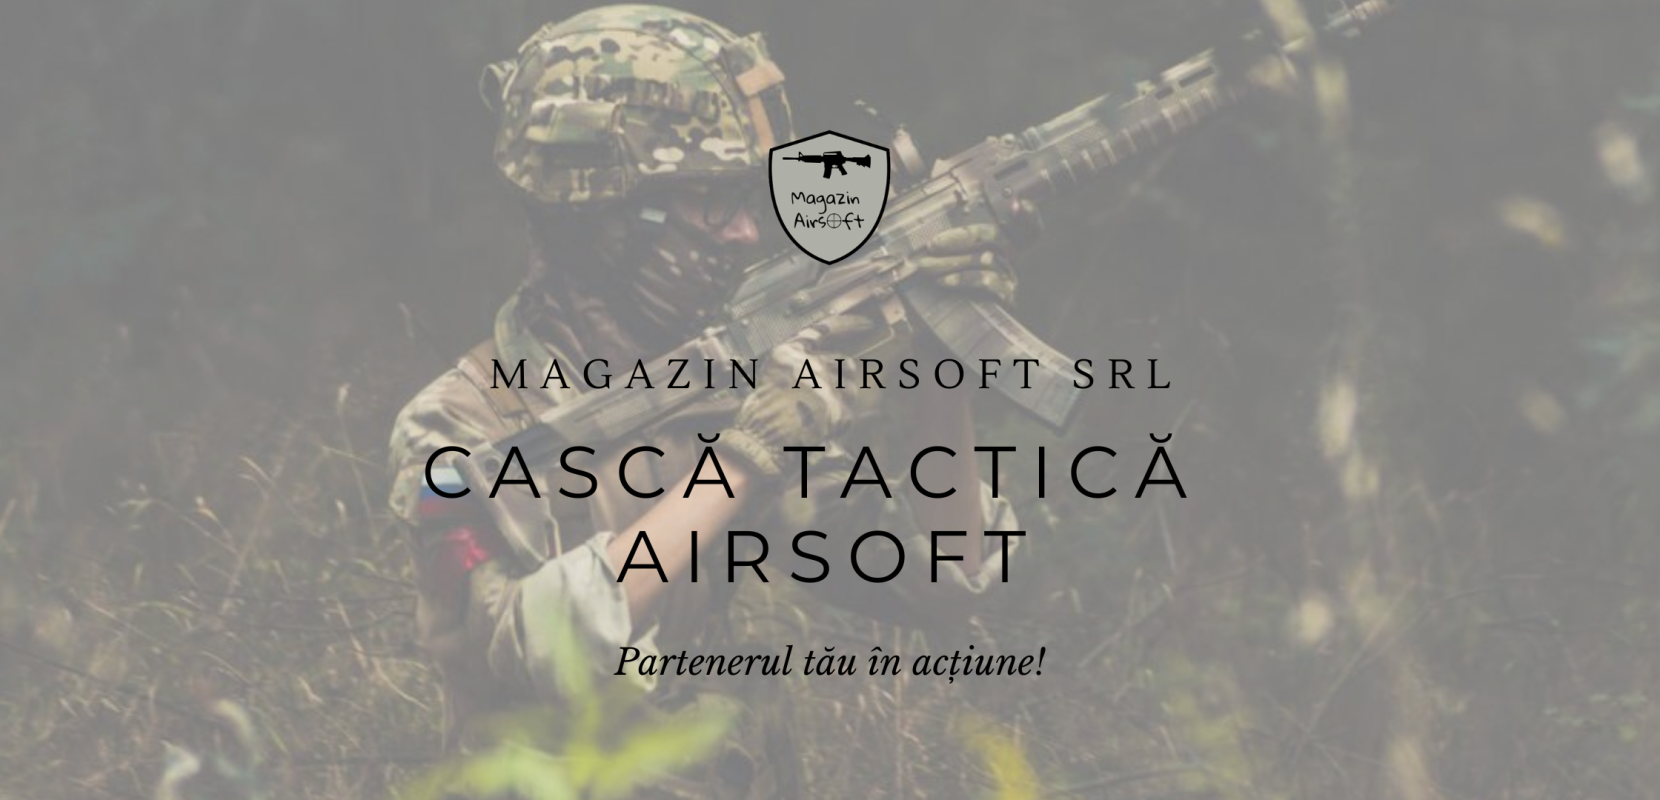 Casca Tactica Airsoft